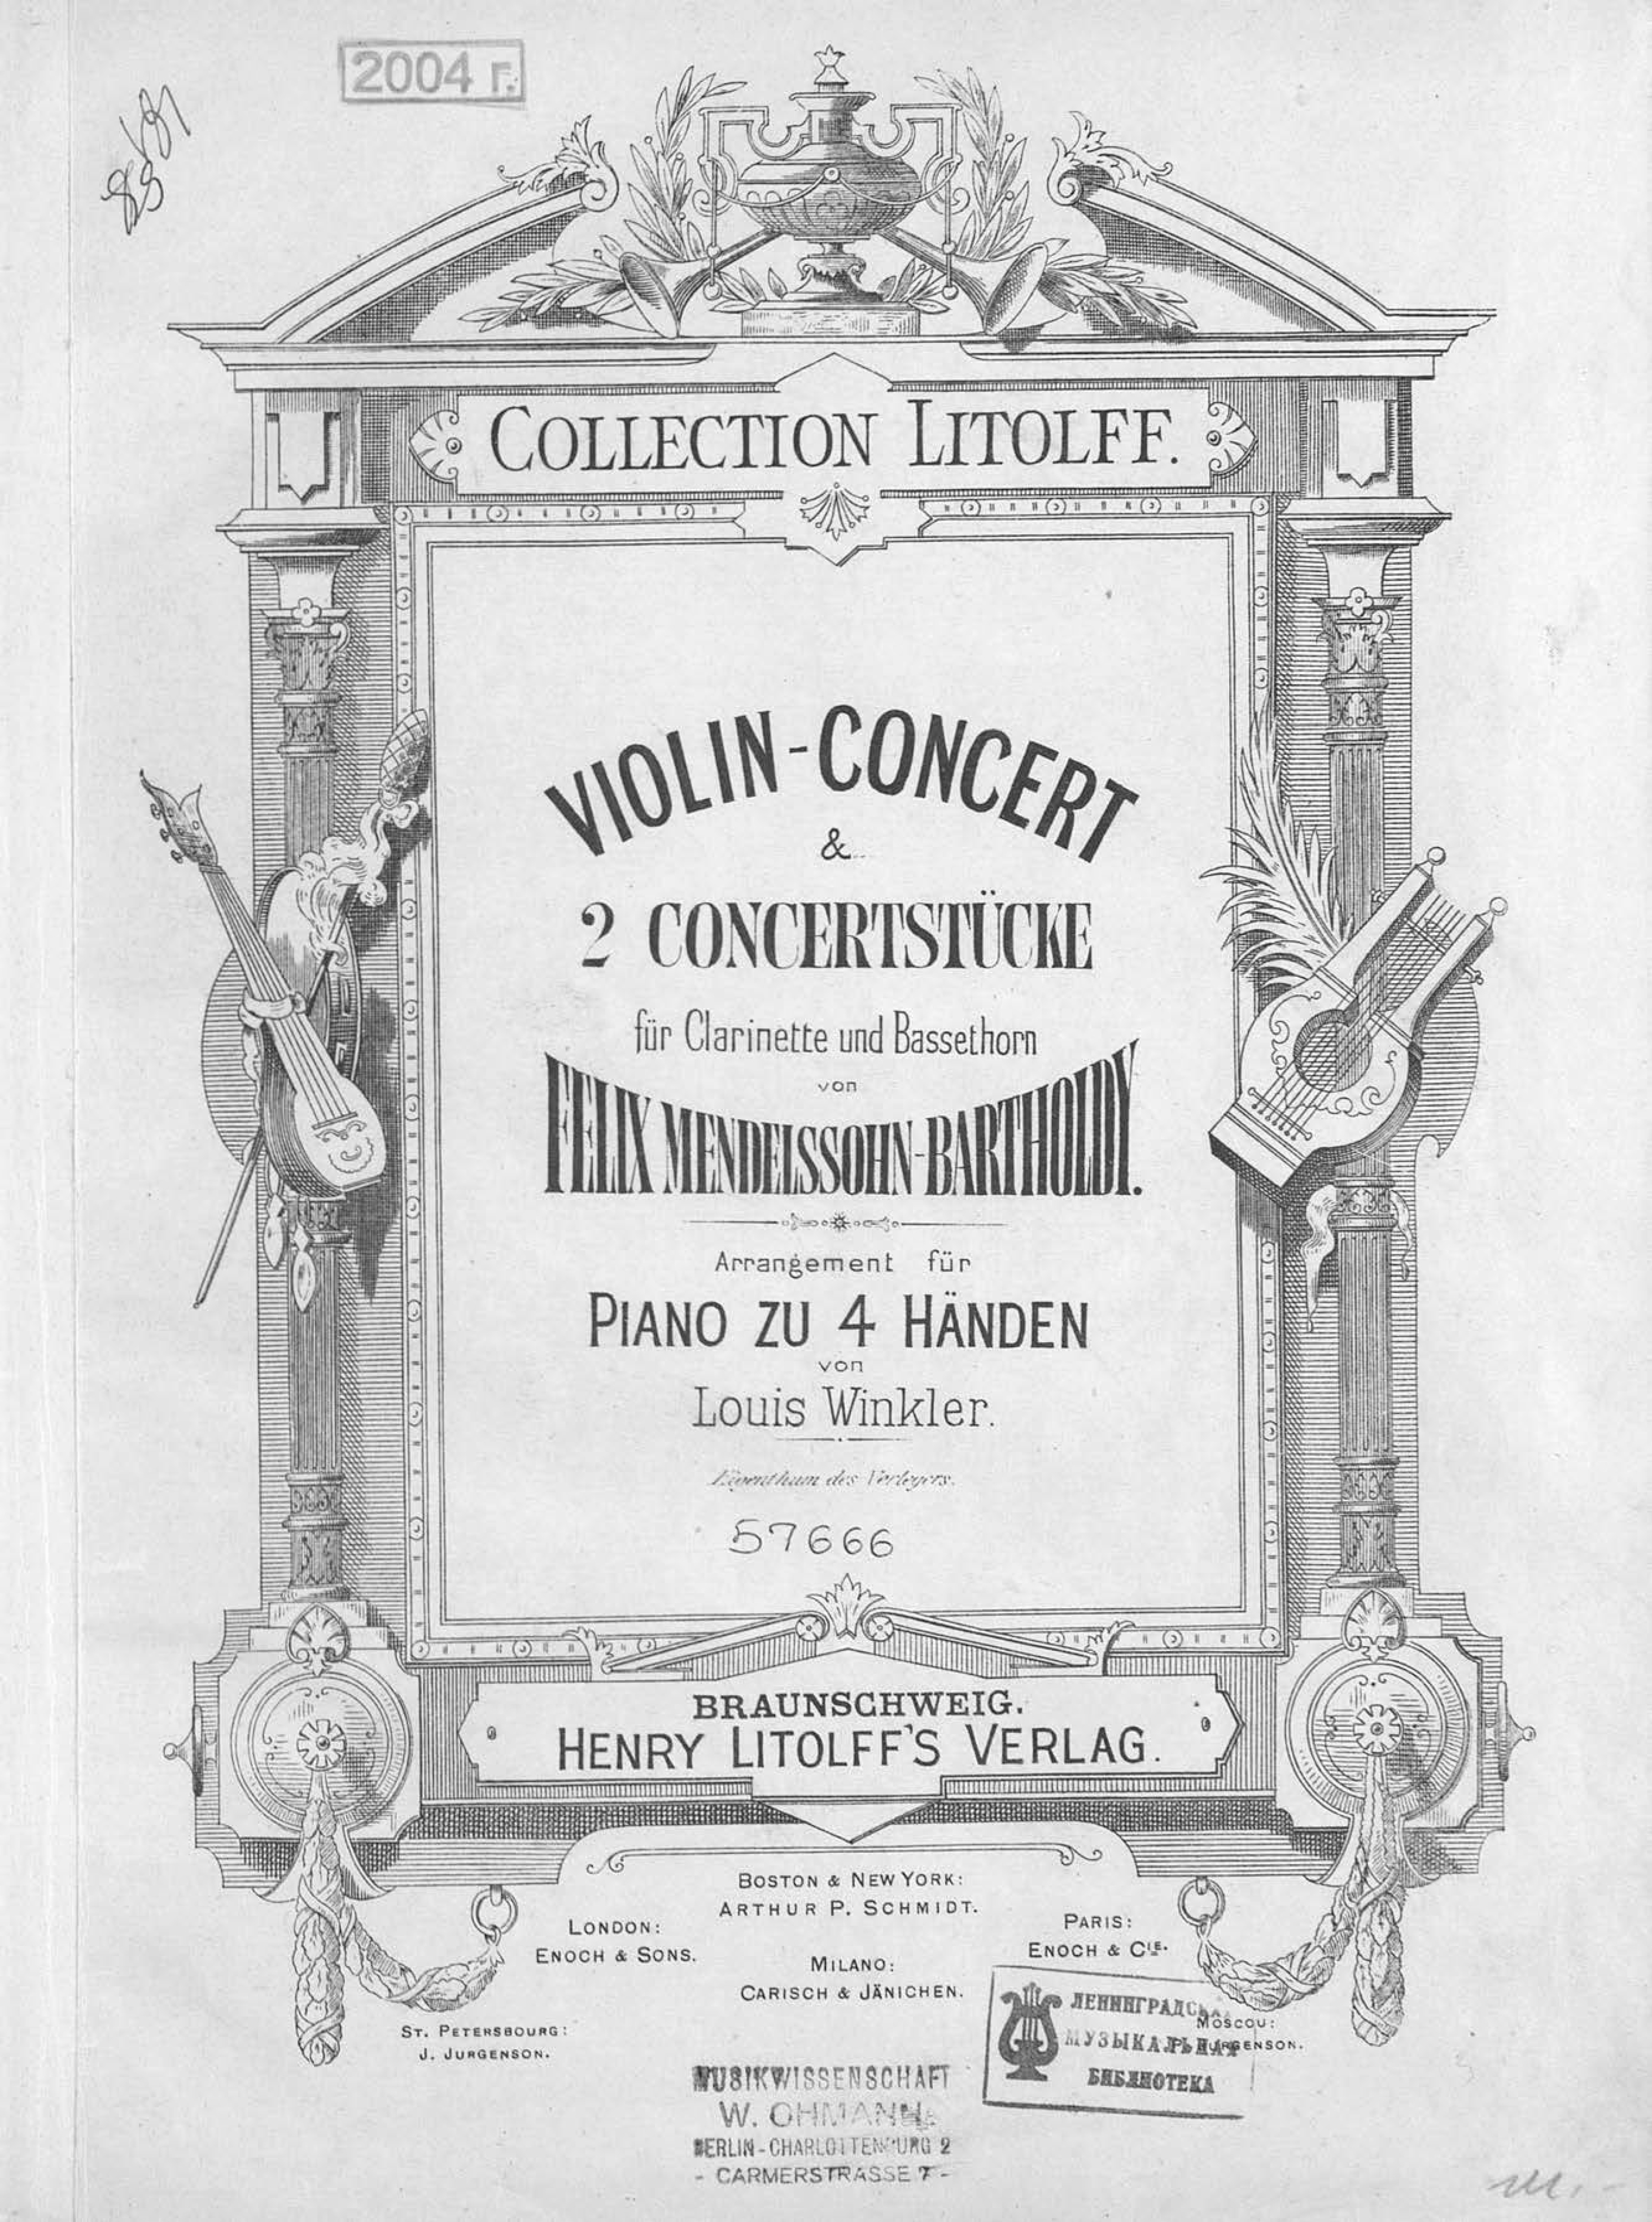 Violin-Concert&2 Concertstucke fur Clarinette und Bassethorn v. F. Mendelssohn-Bartholdy